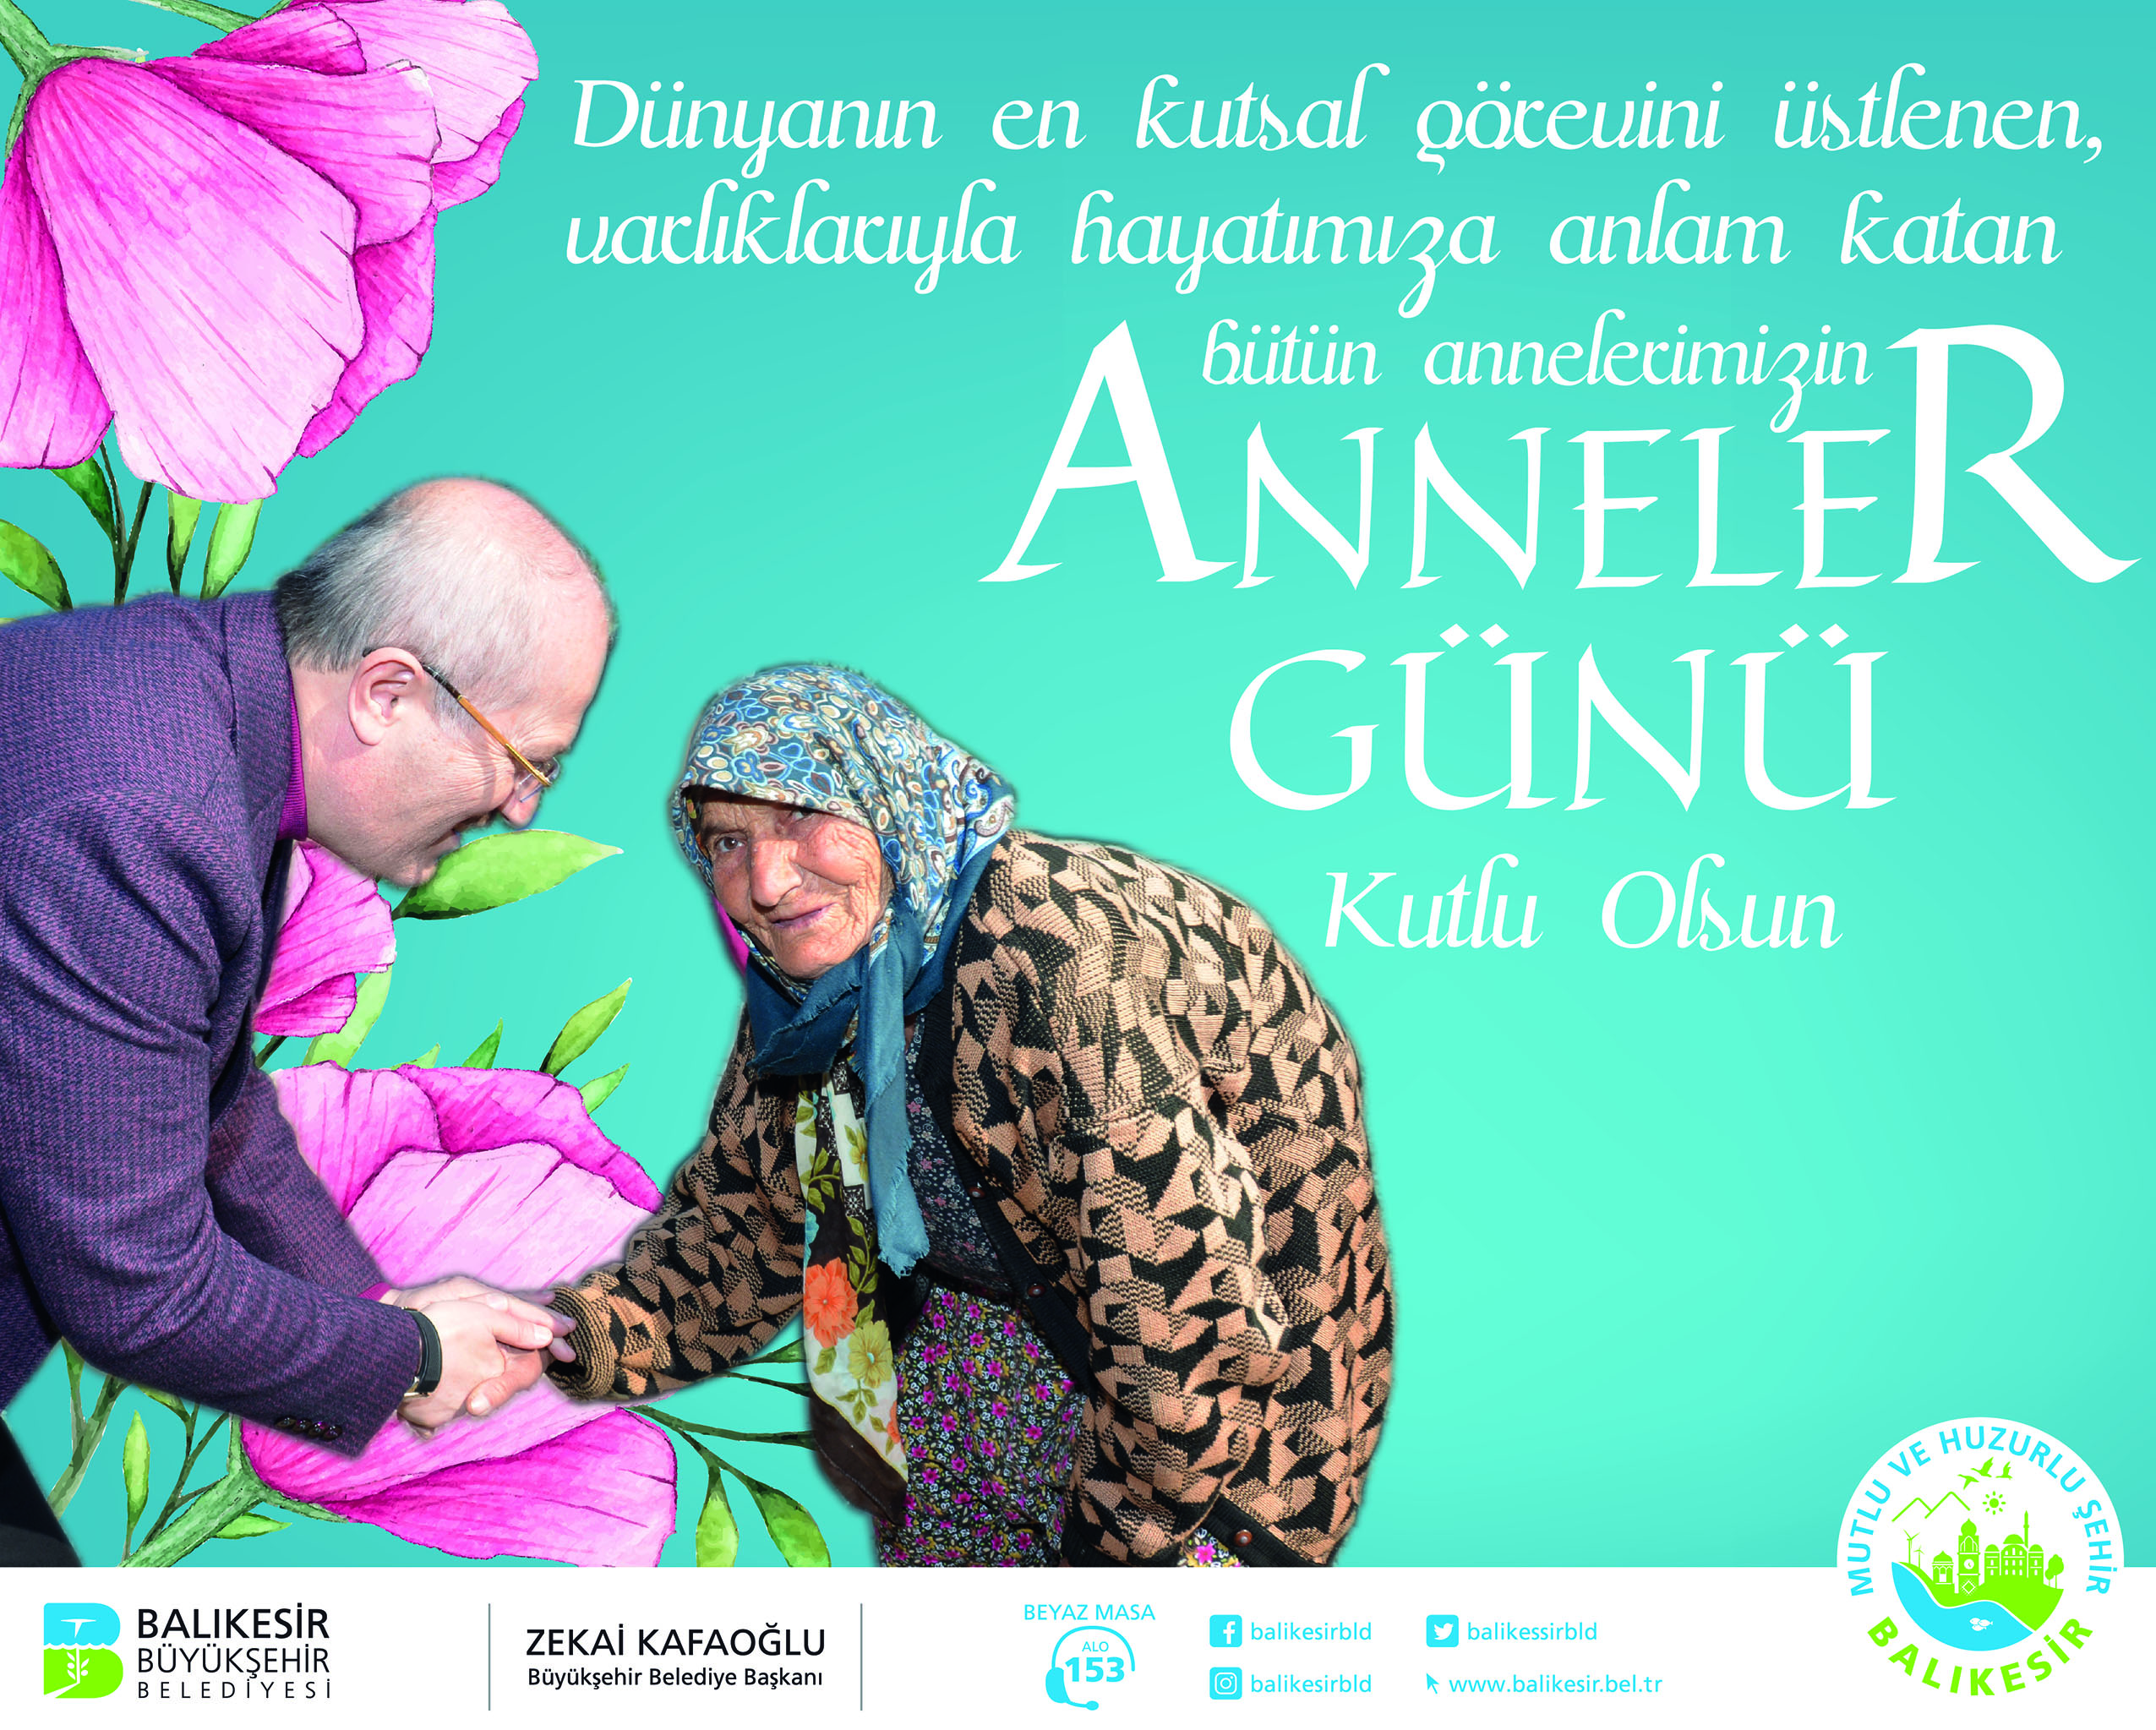 Balıkesir Büyükşehir Belediye Başkanlığı Anneler Günü Kutlaması